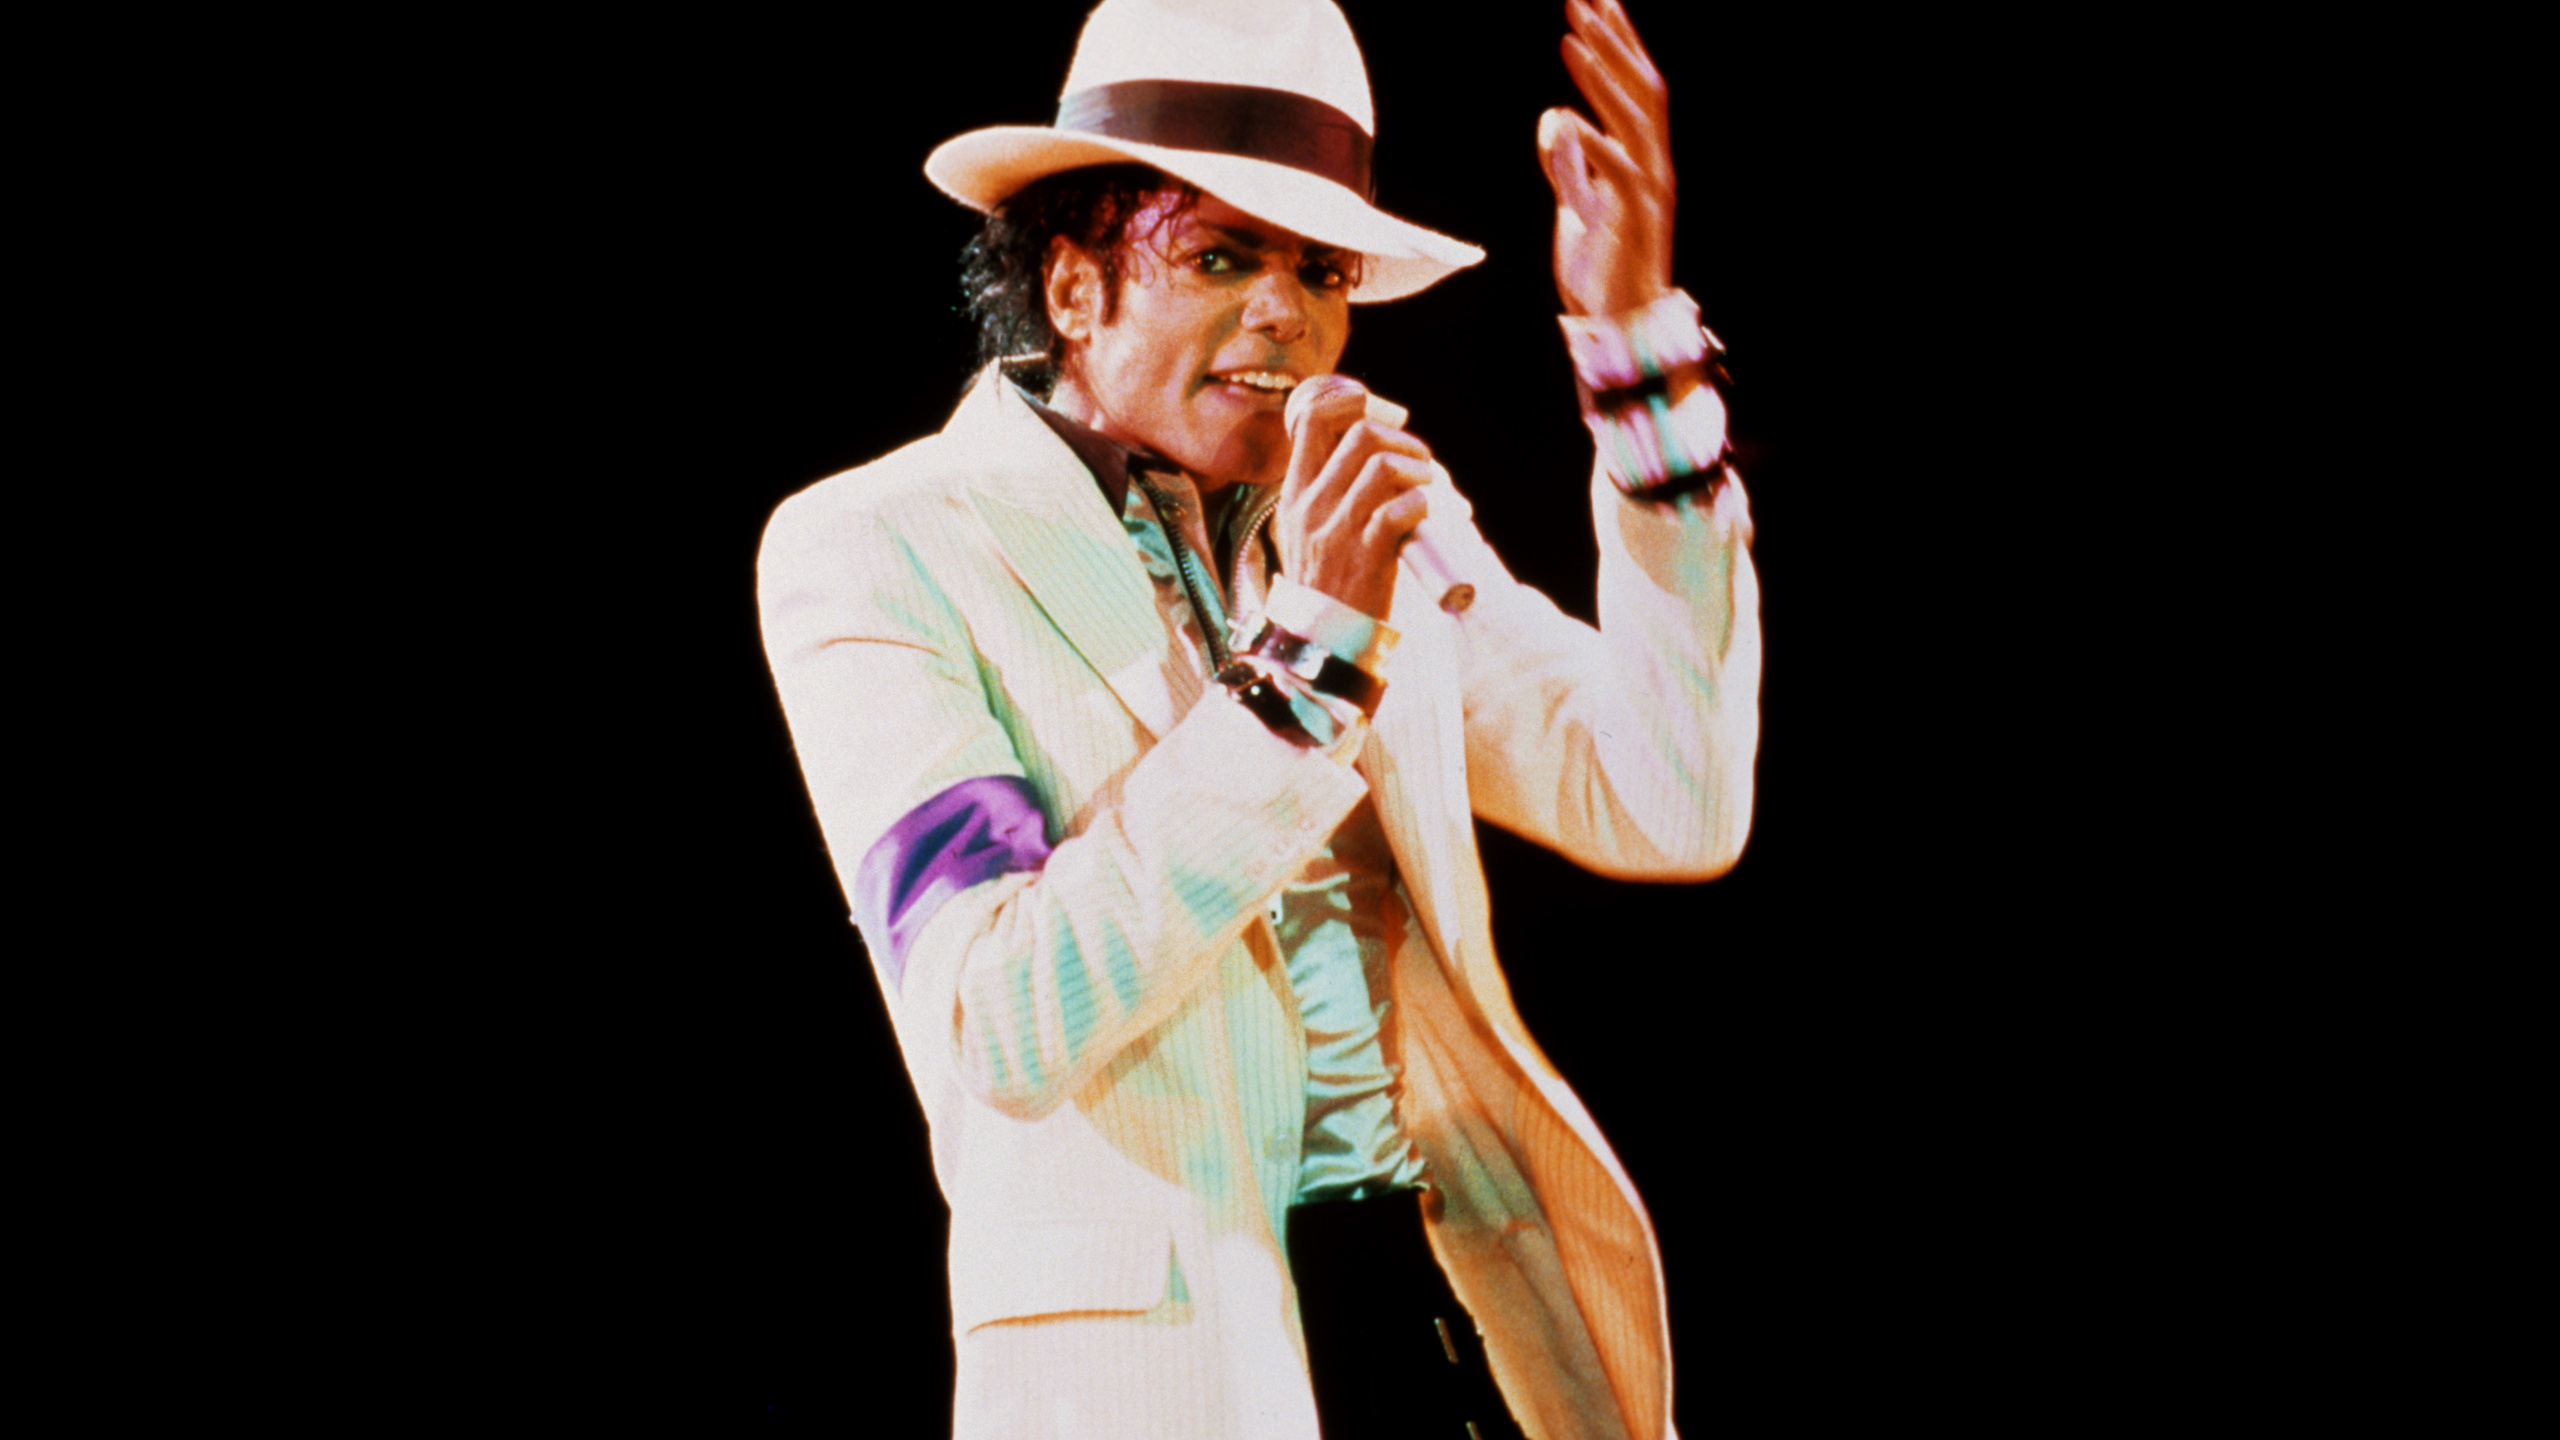 Michael Jackson, Rendimiento, el Artista de Música, Artes Escénicas, Evento. Wallpaper in 2560x1440 Resolution